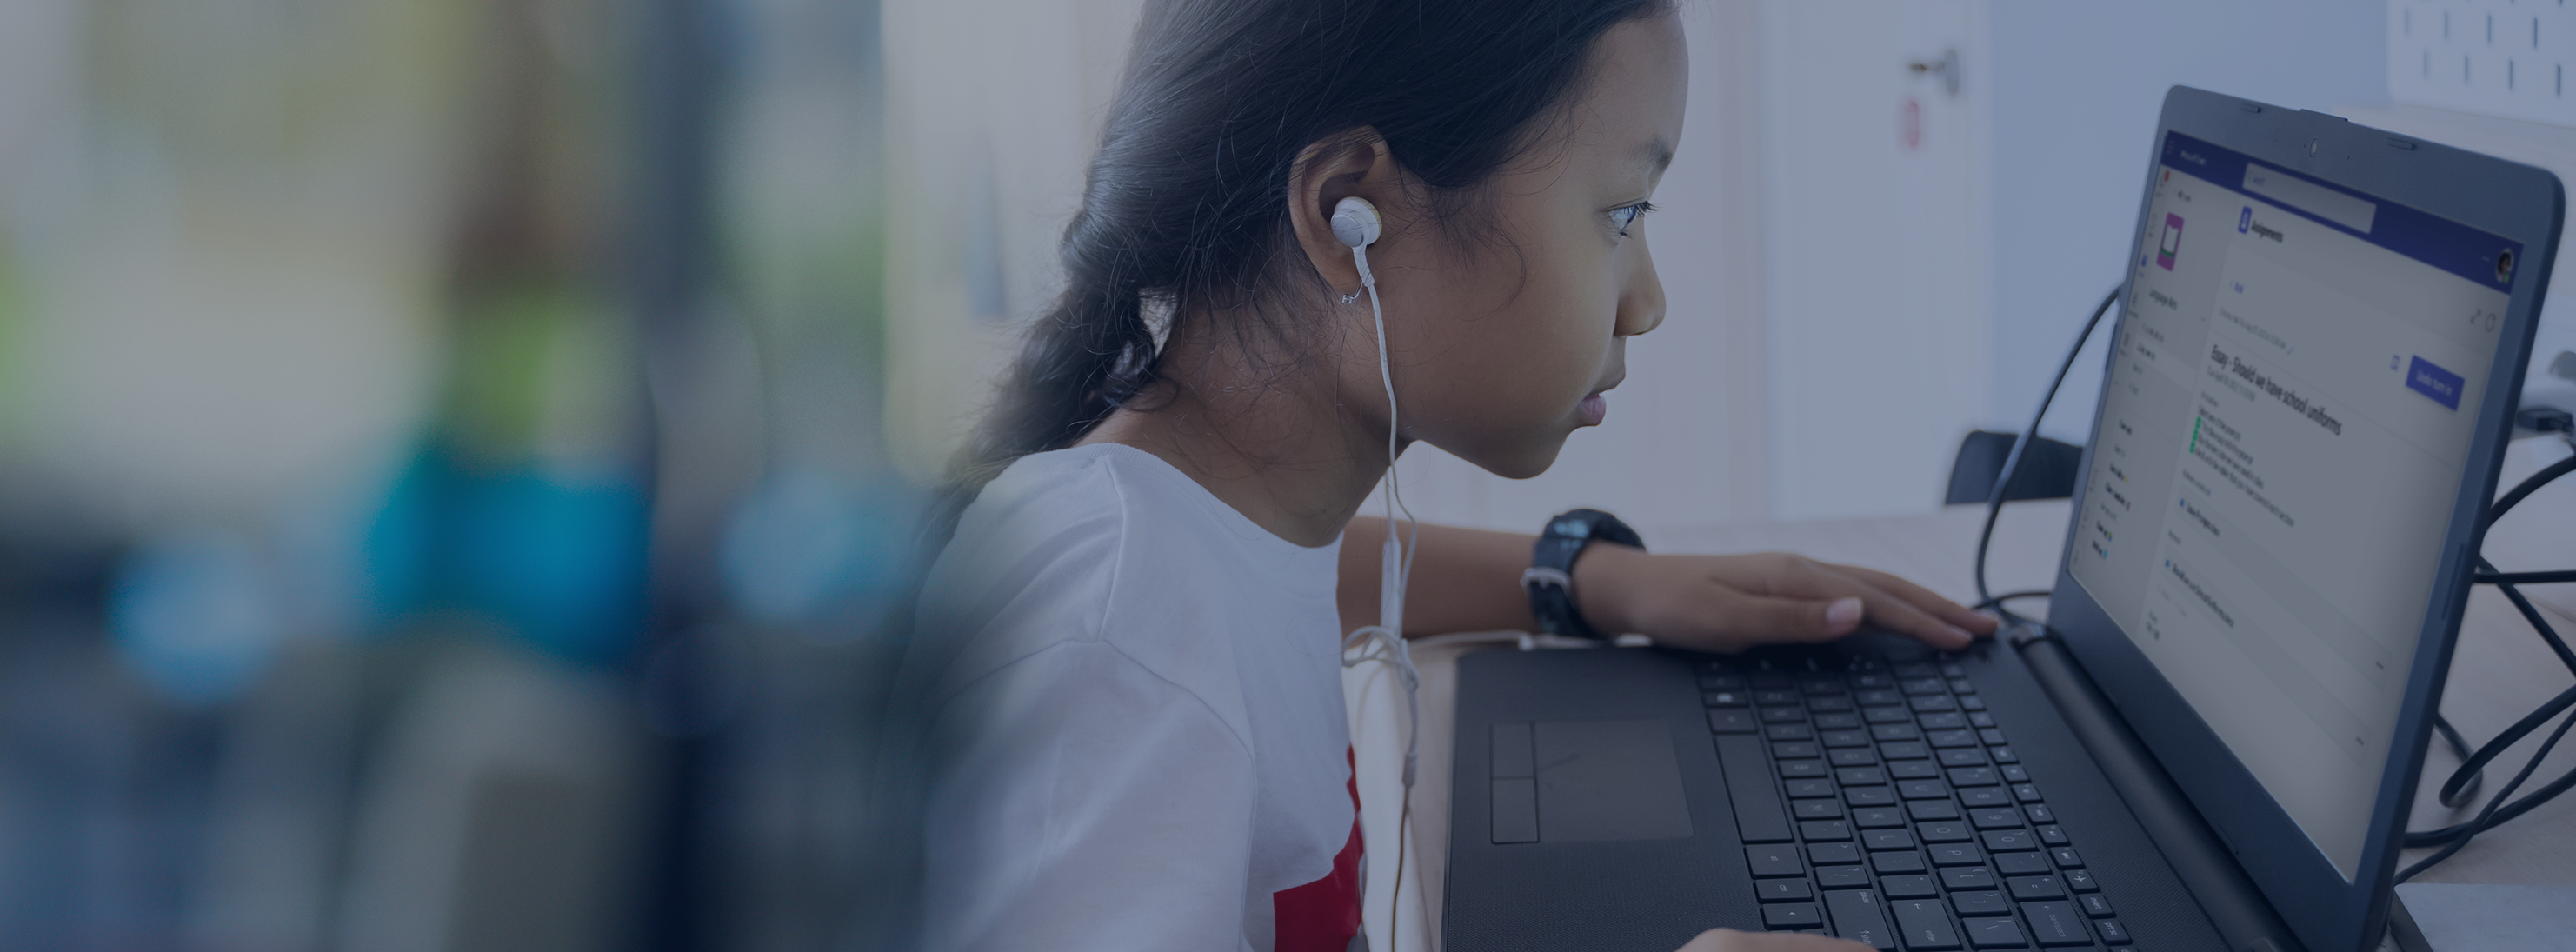 Garota usando laptop com fones de ouvido Cabeçalho de página da Microsoft